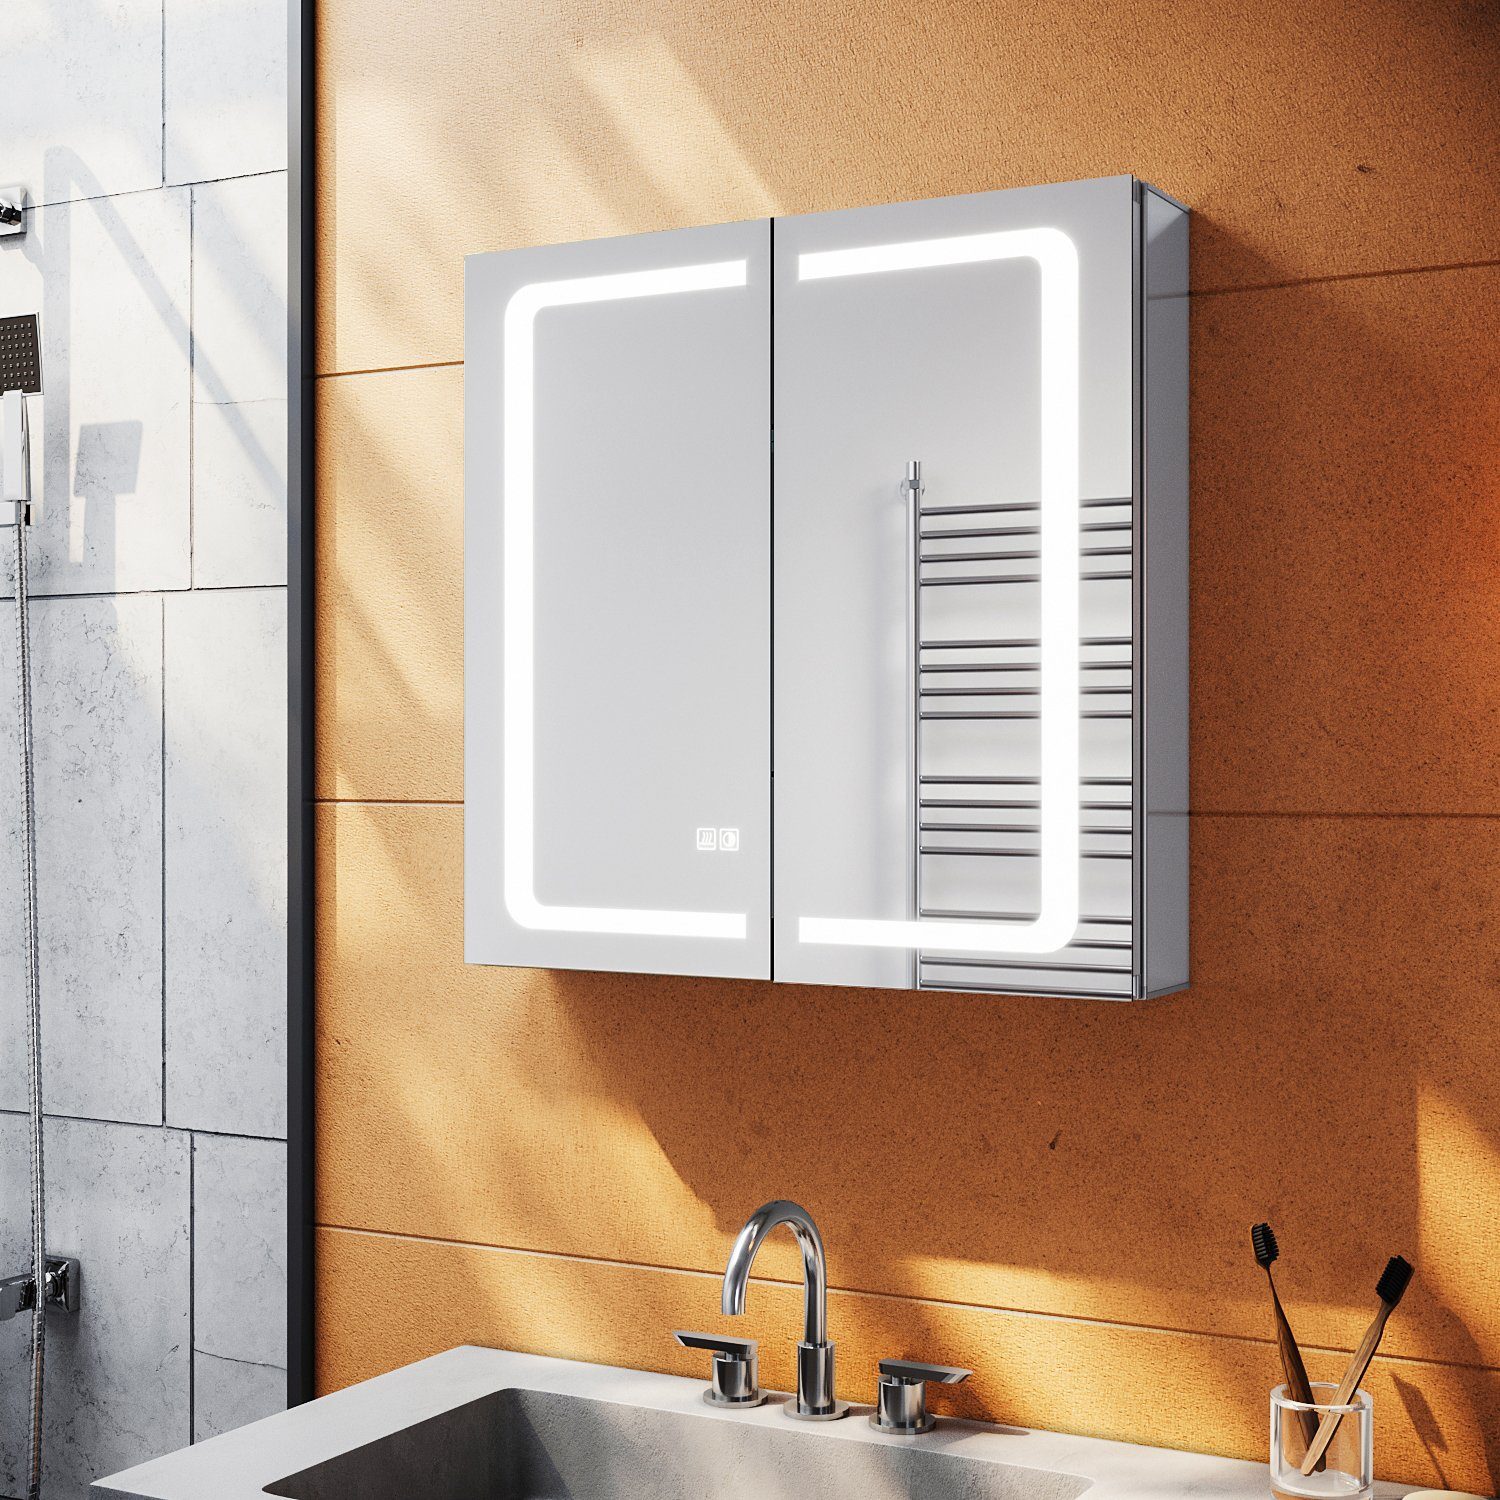 SONNI Spiegelschrank »Spiegelschrank Bad mit Beleuchtung und Steckdose LED  Beschlagfrei« mit Touchschalter